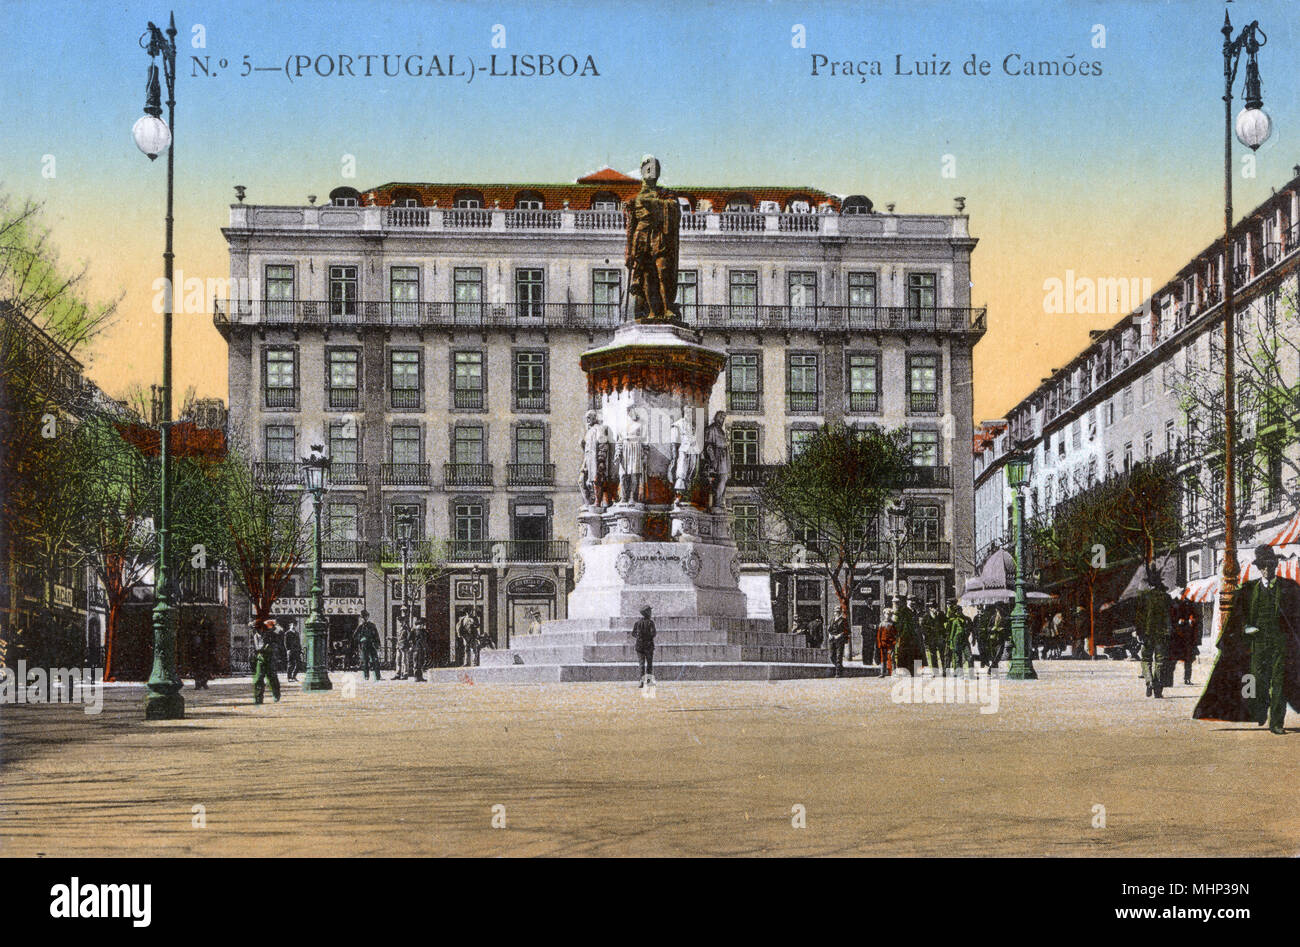 Praça Luis De Camões, Lissabon, Portugal, mit einer Statue des 16. Jahrhunderts epische Dichter. Datum: ca. 1908 Stockfoto